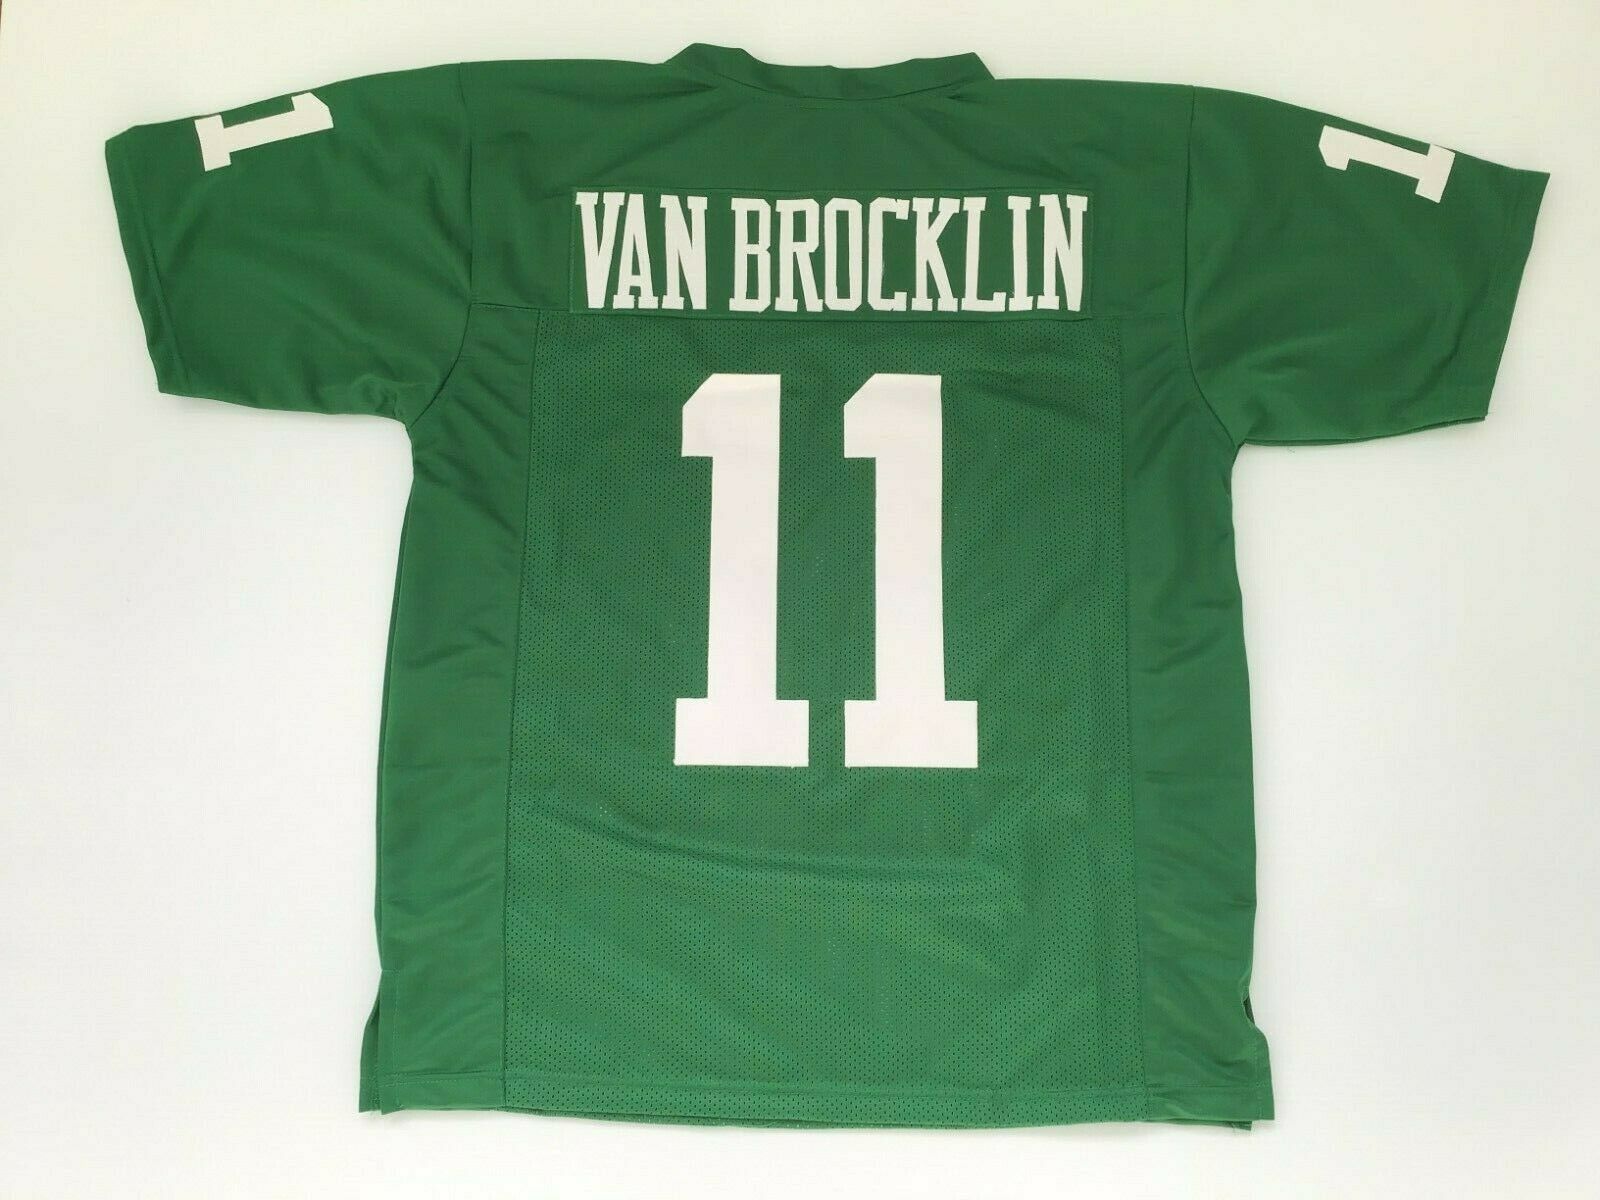 UNSIGNED CUSTOM Sewn Stitched Norm Van Brocklin Green Jersey - M, L, XL, 2XL